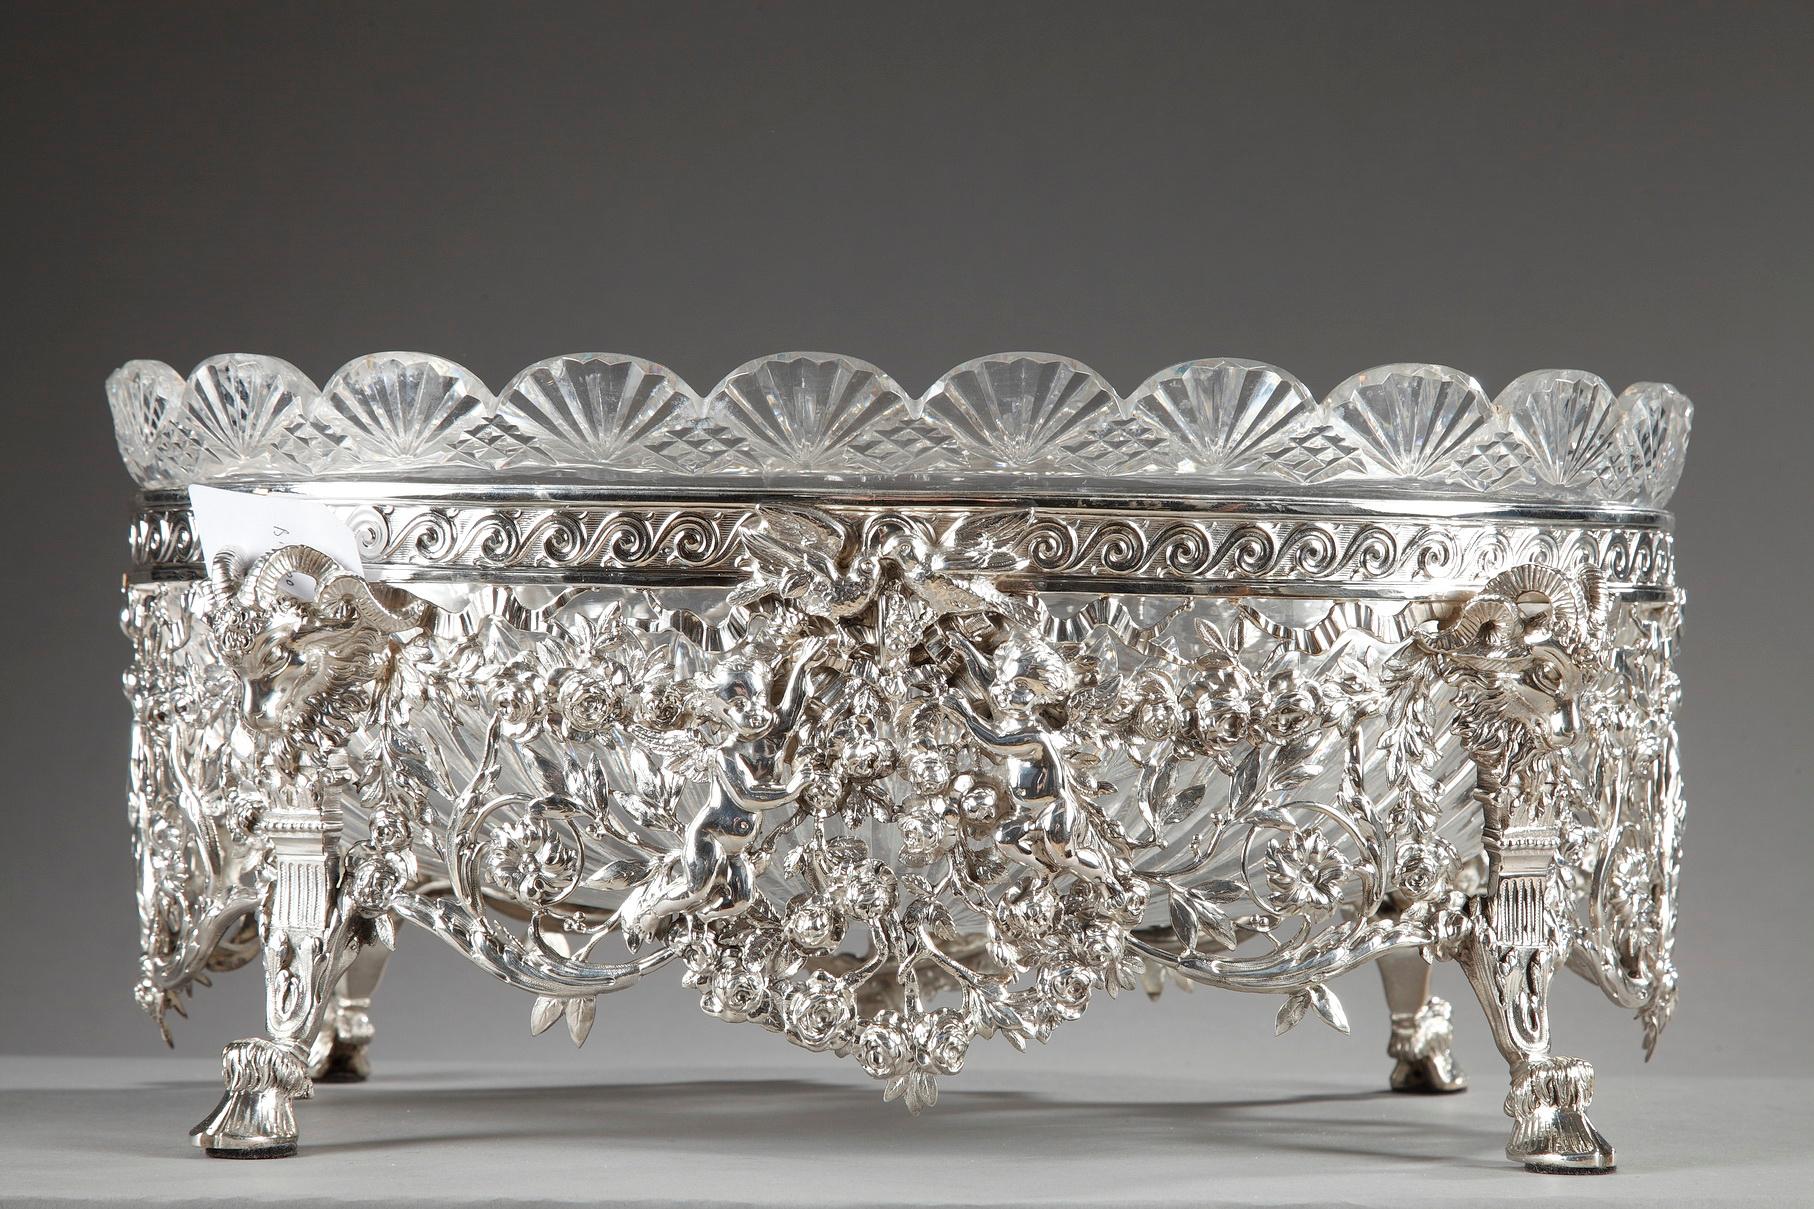 Jardinière aus Silber, bestehend aus einer ovalen Schale mit geschliffenem Kristall, die in einem silbernen Rahmen ruht. Der gewellte Rand der Kristallschale ist mit strahlenden und rautenförmigen Mustern verziert. Der silberne Rahmen ist reich